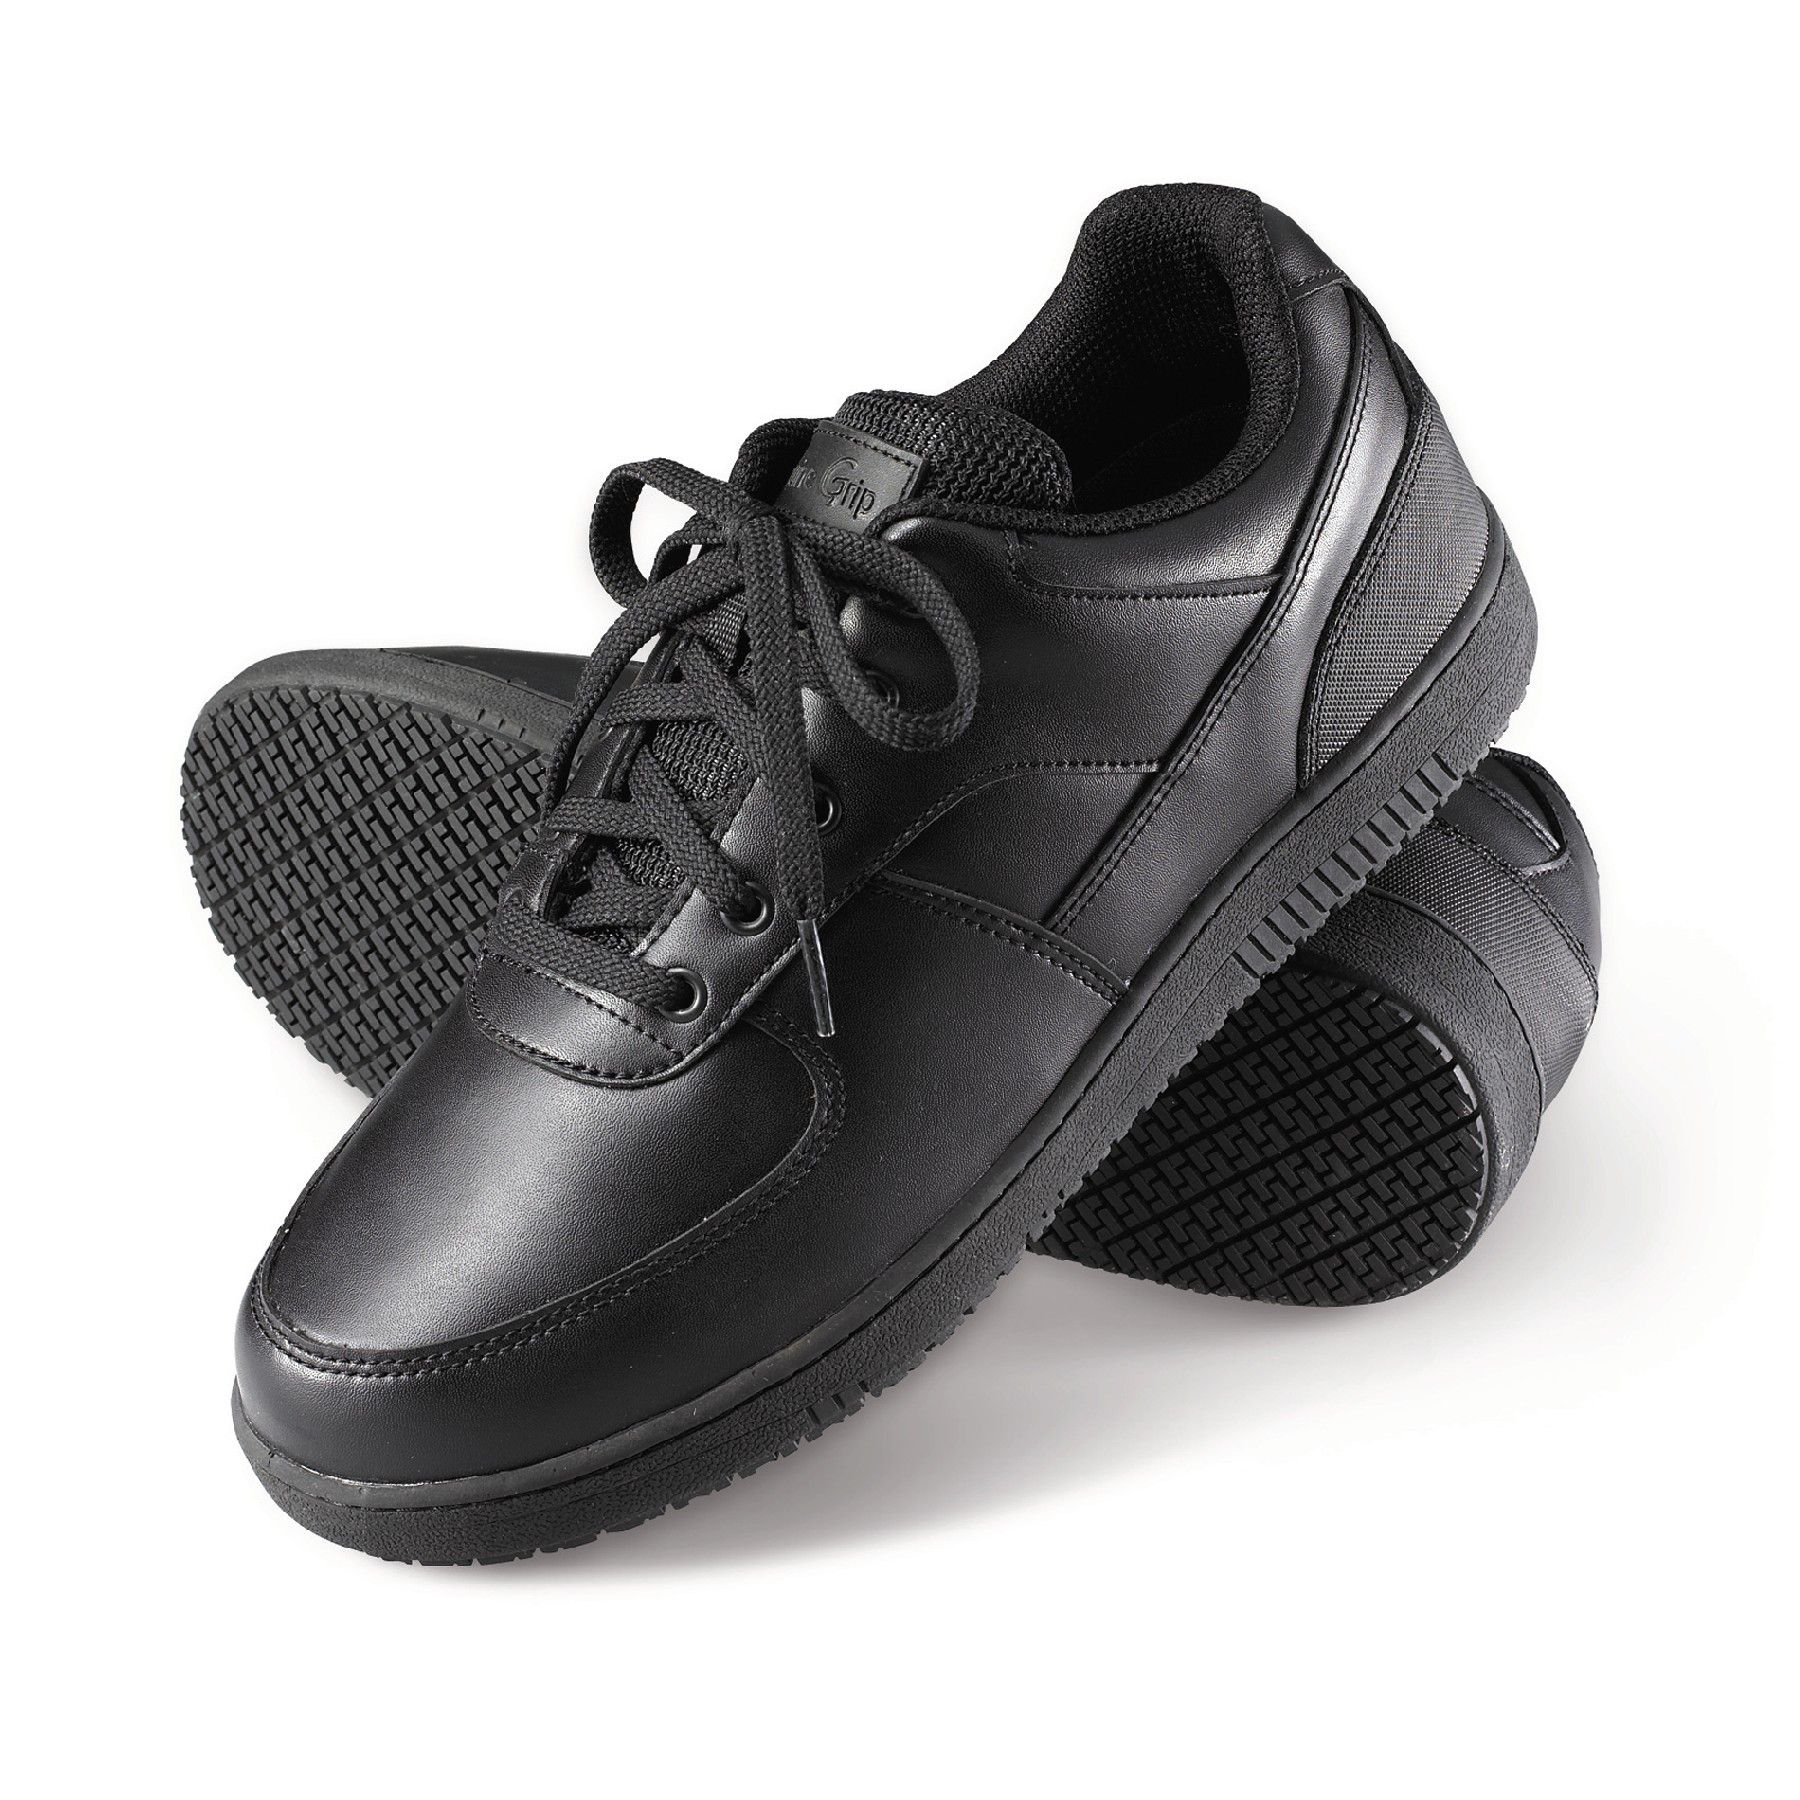 polishable slip resistant shoes